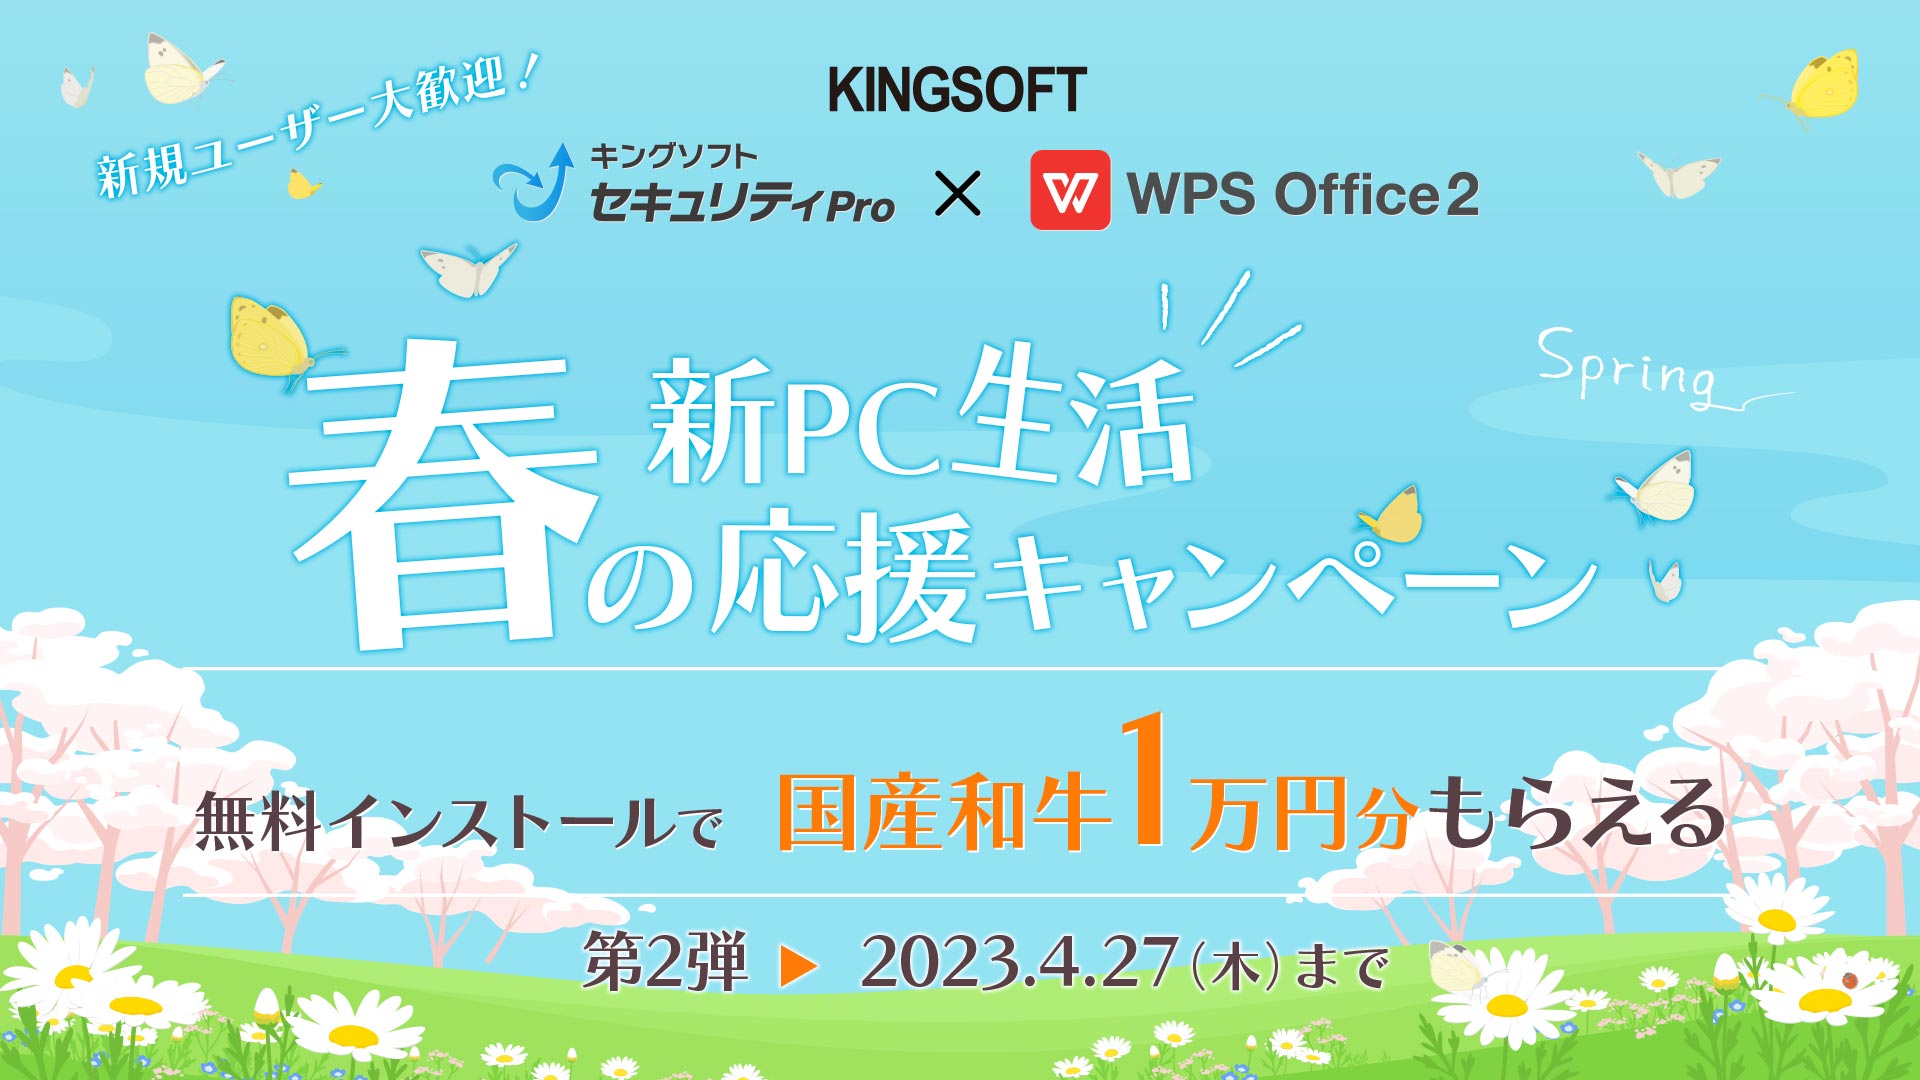 キングソフト、「春の新PC生活応援キャンペーン第2弾」を4月4日より開催 ～「WPS Office 2」「WPS Off